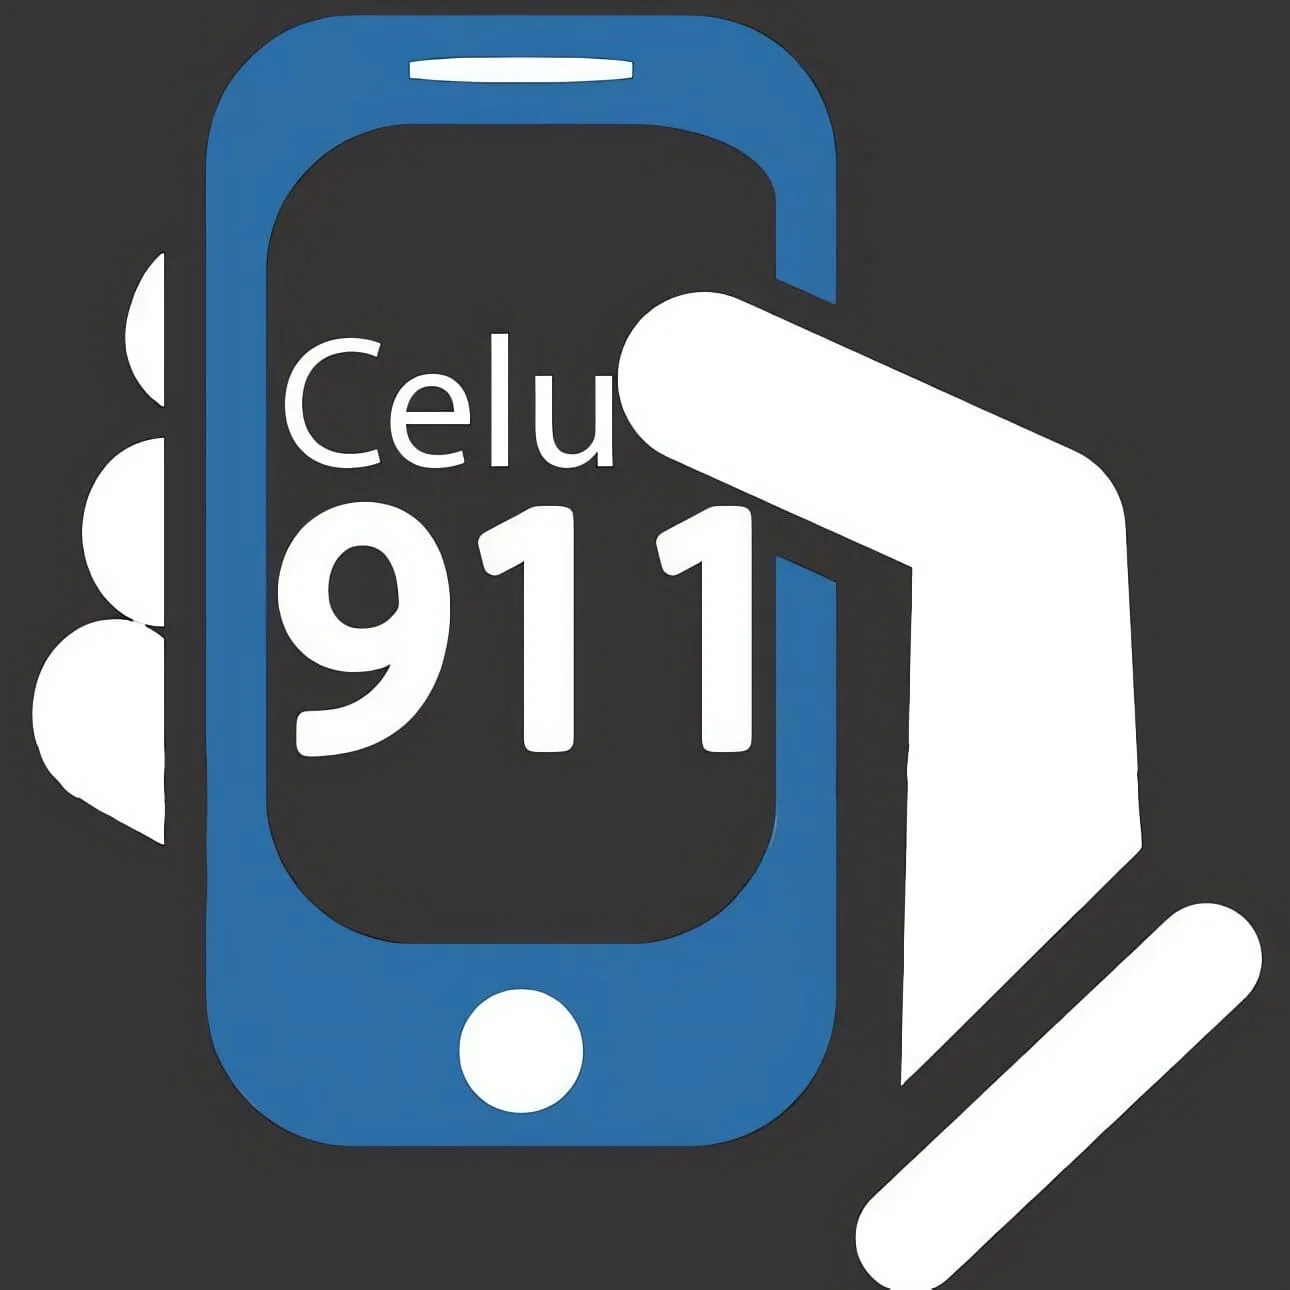 Celulares-celu911-13838